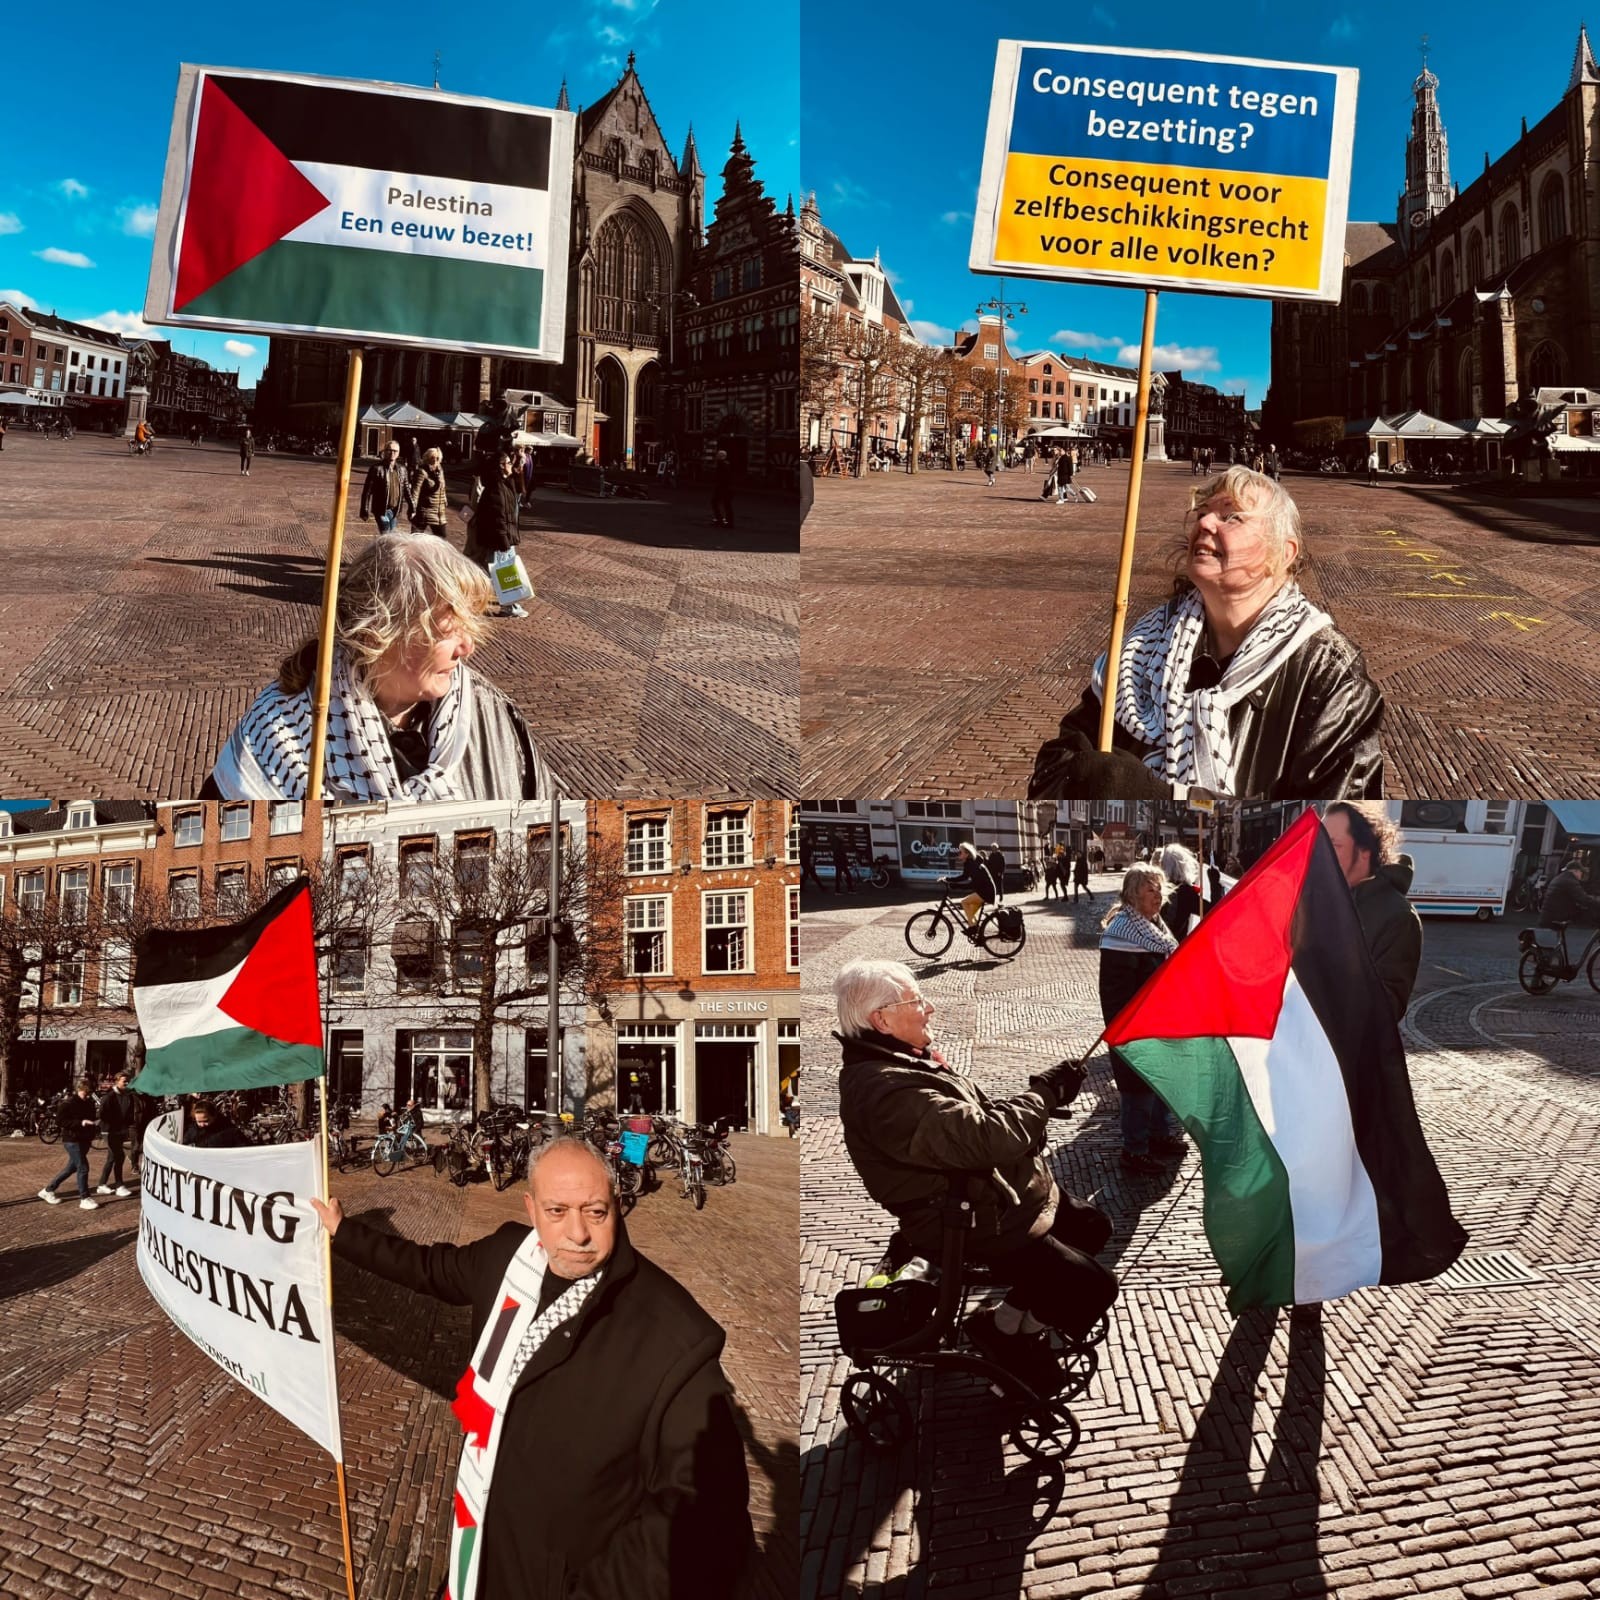 وقفة تضامنية مع الشعب الفلسطيني في مدينة (هارلم) في هولندا.jpeg